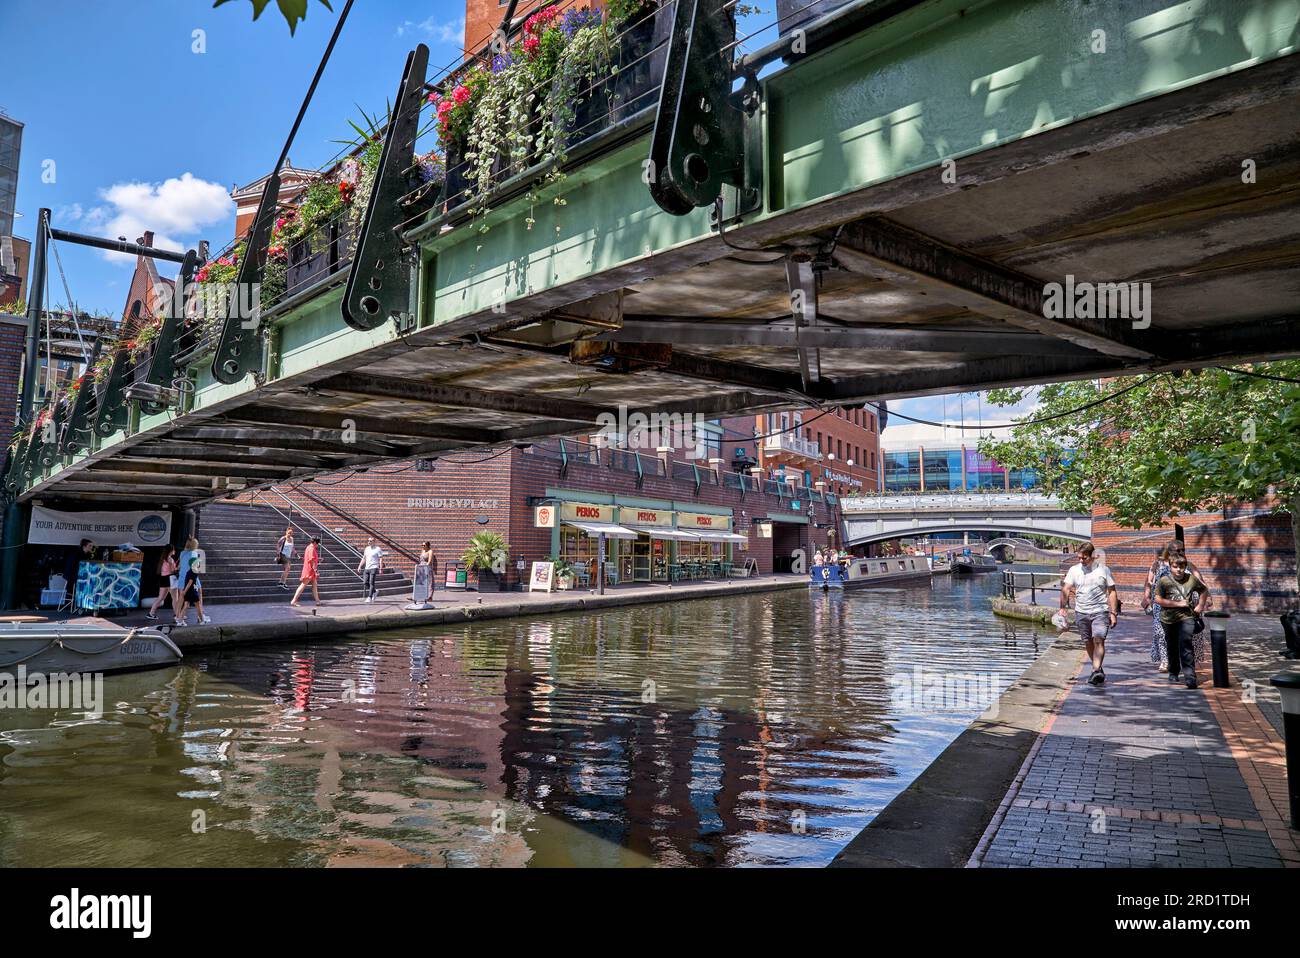 Ponte pedonale sull'acqua a Brindley Place con il canale di Birmingham che passa sotto. Birmingham, Inghilterra, Regno Unito, Foto Stock